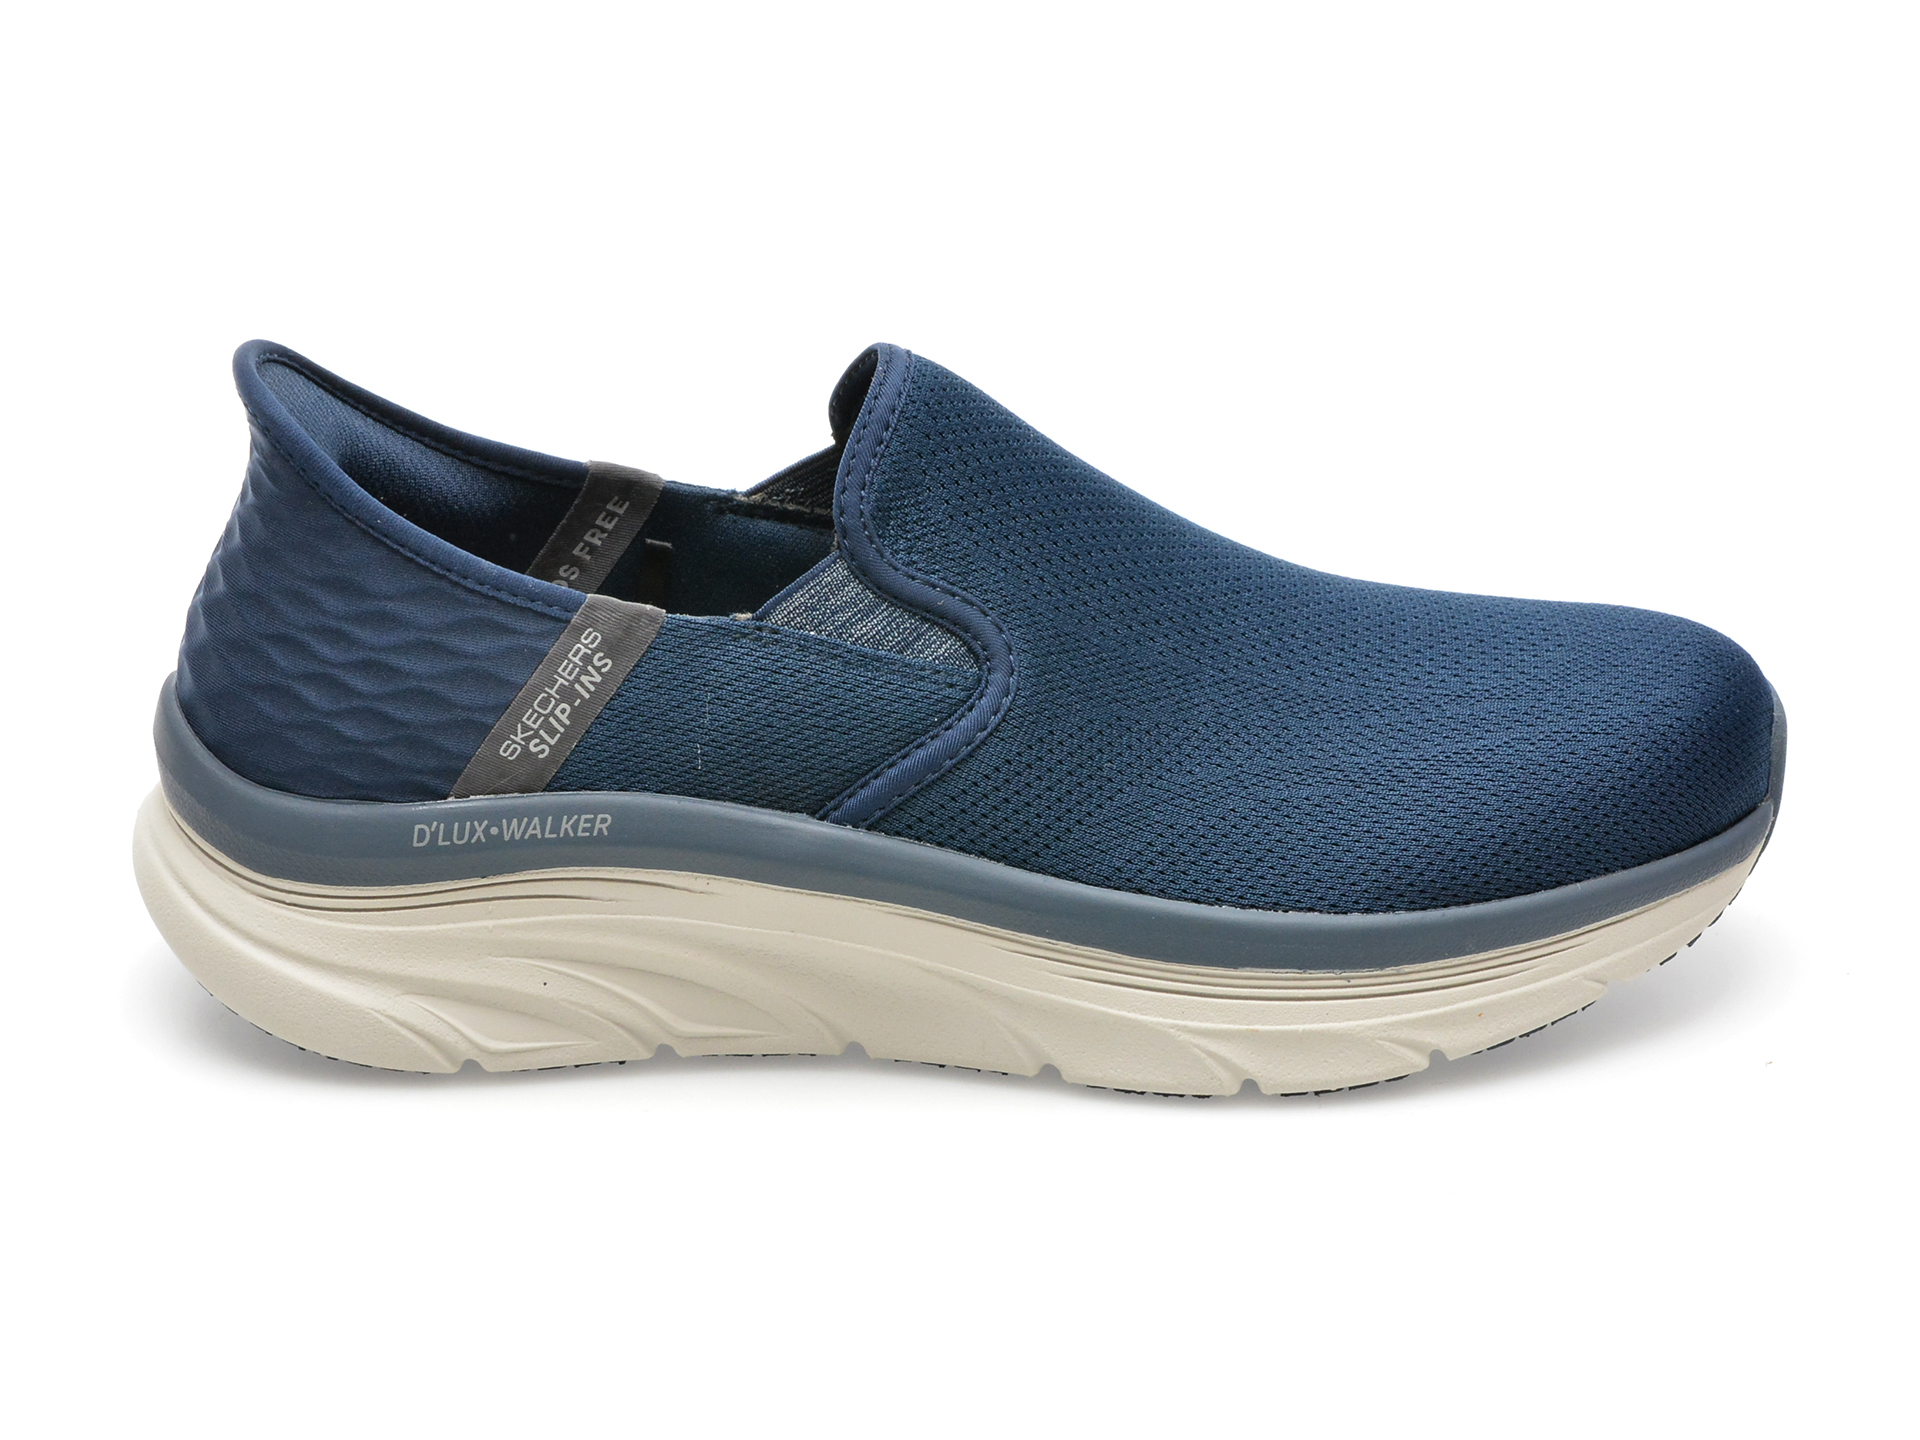 Pantofi sport SKECHERS bleumarin, D LUX WALKER, din material textil